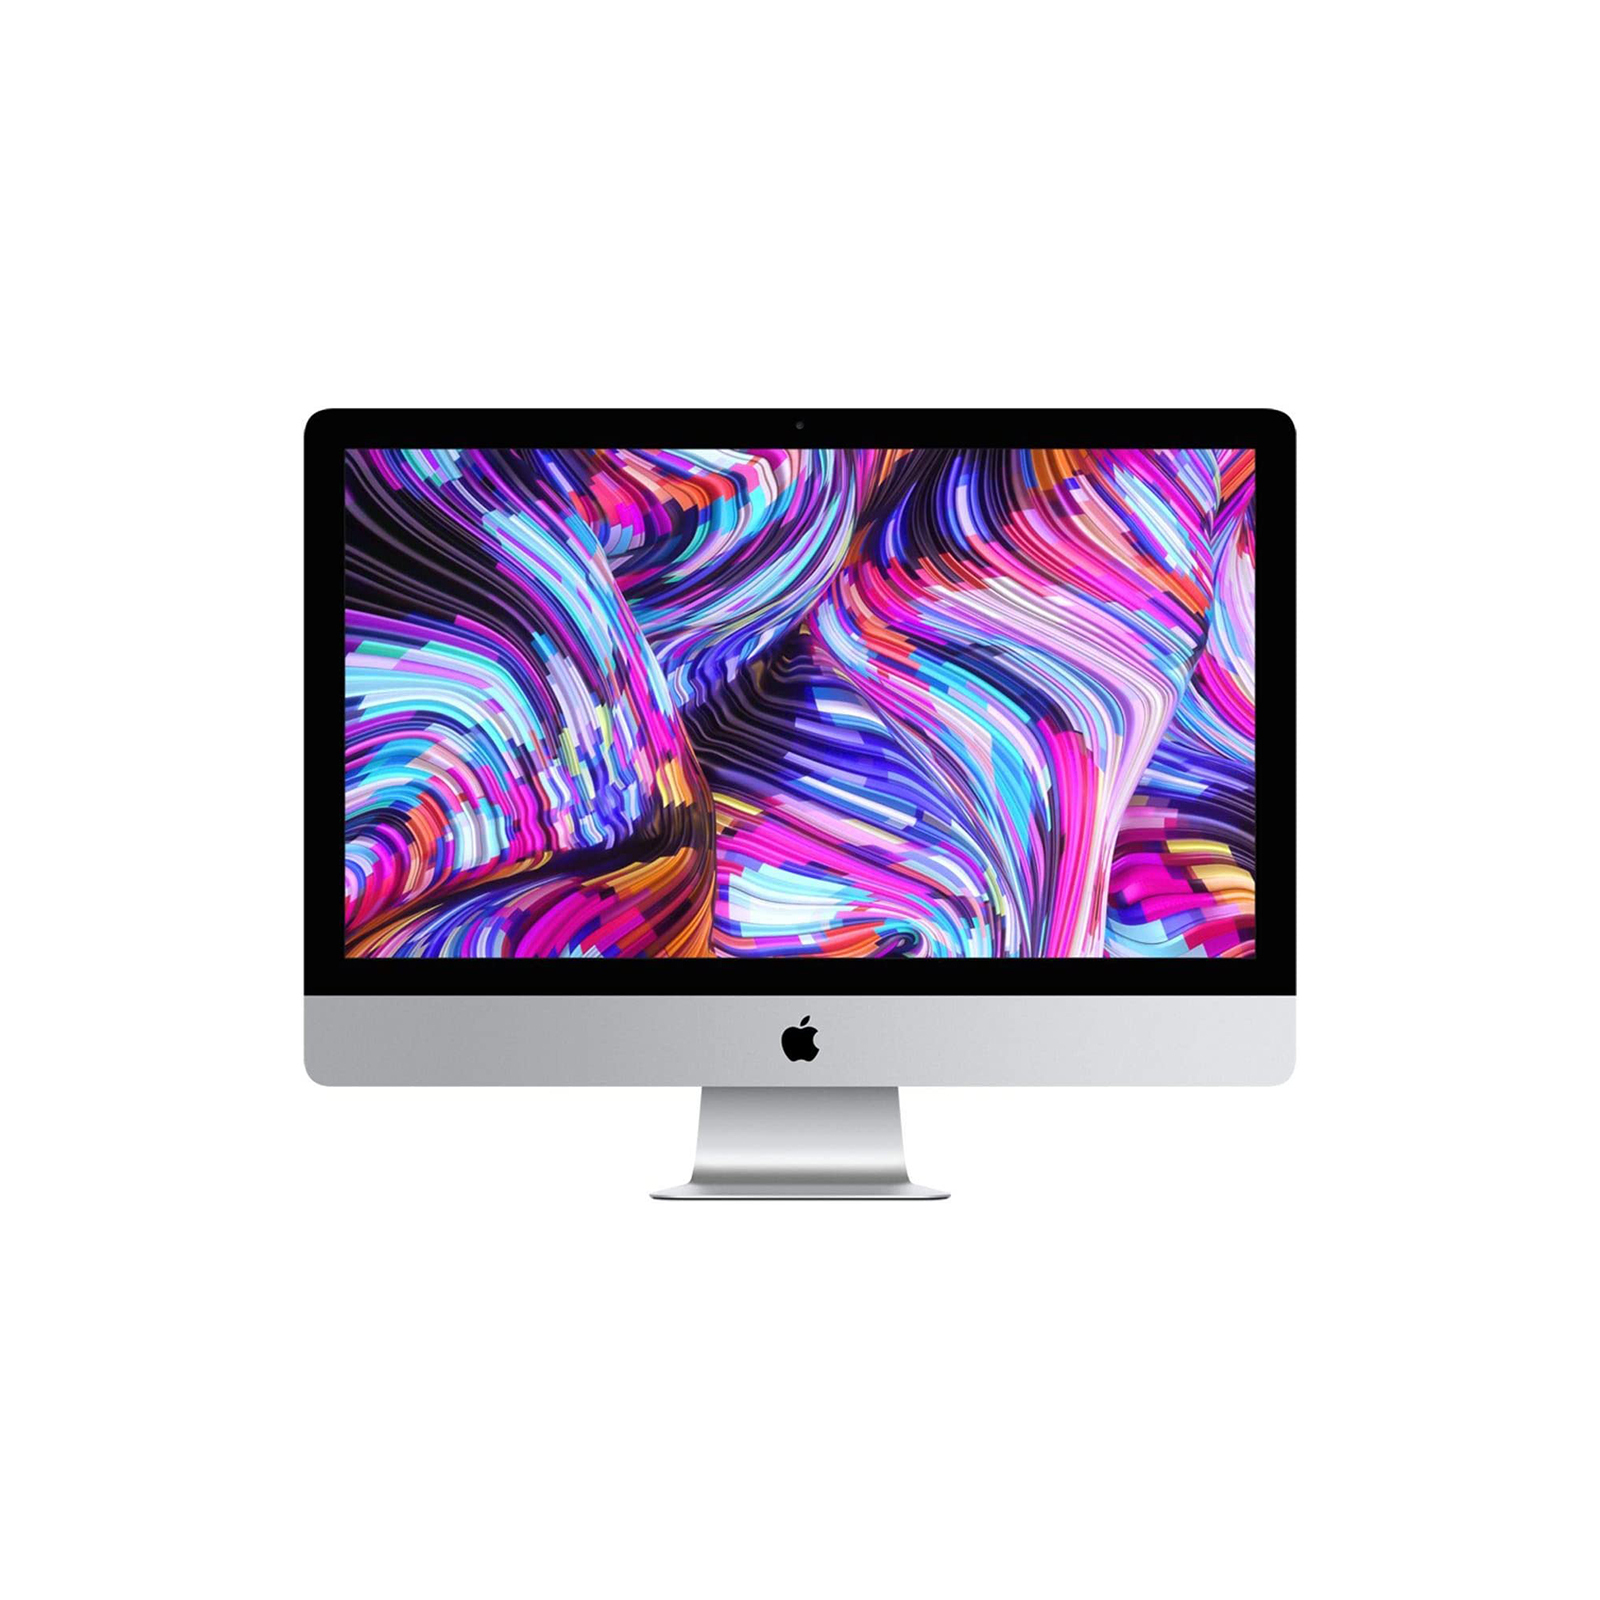 iMac 27" 5K Late 2015 - Core i5 3.2 Ghz / 16GB RAM / 1TB Fusion / R9 M380 2GB GPU